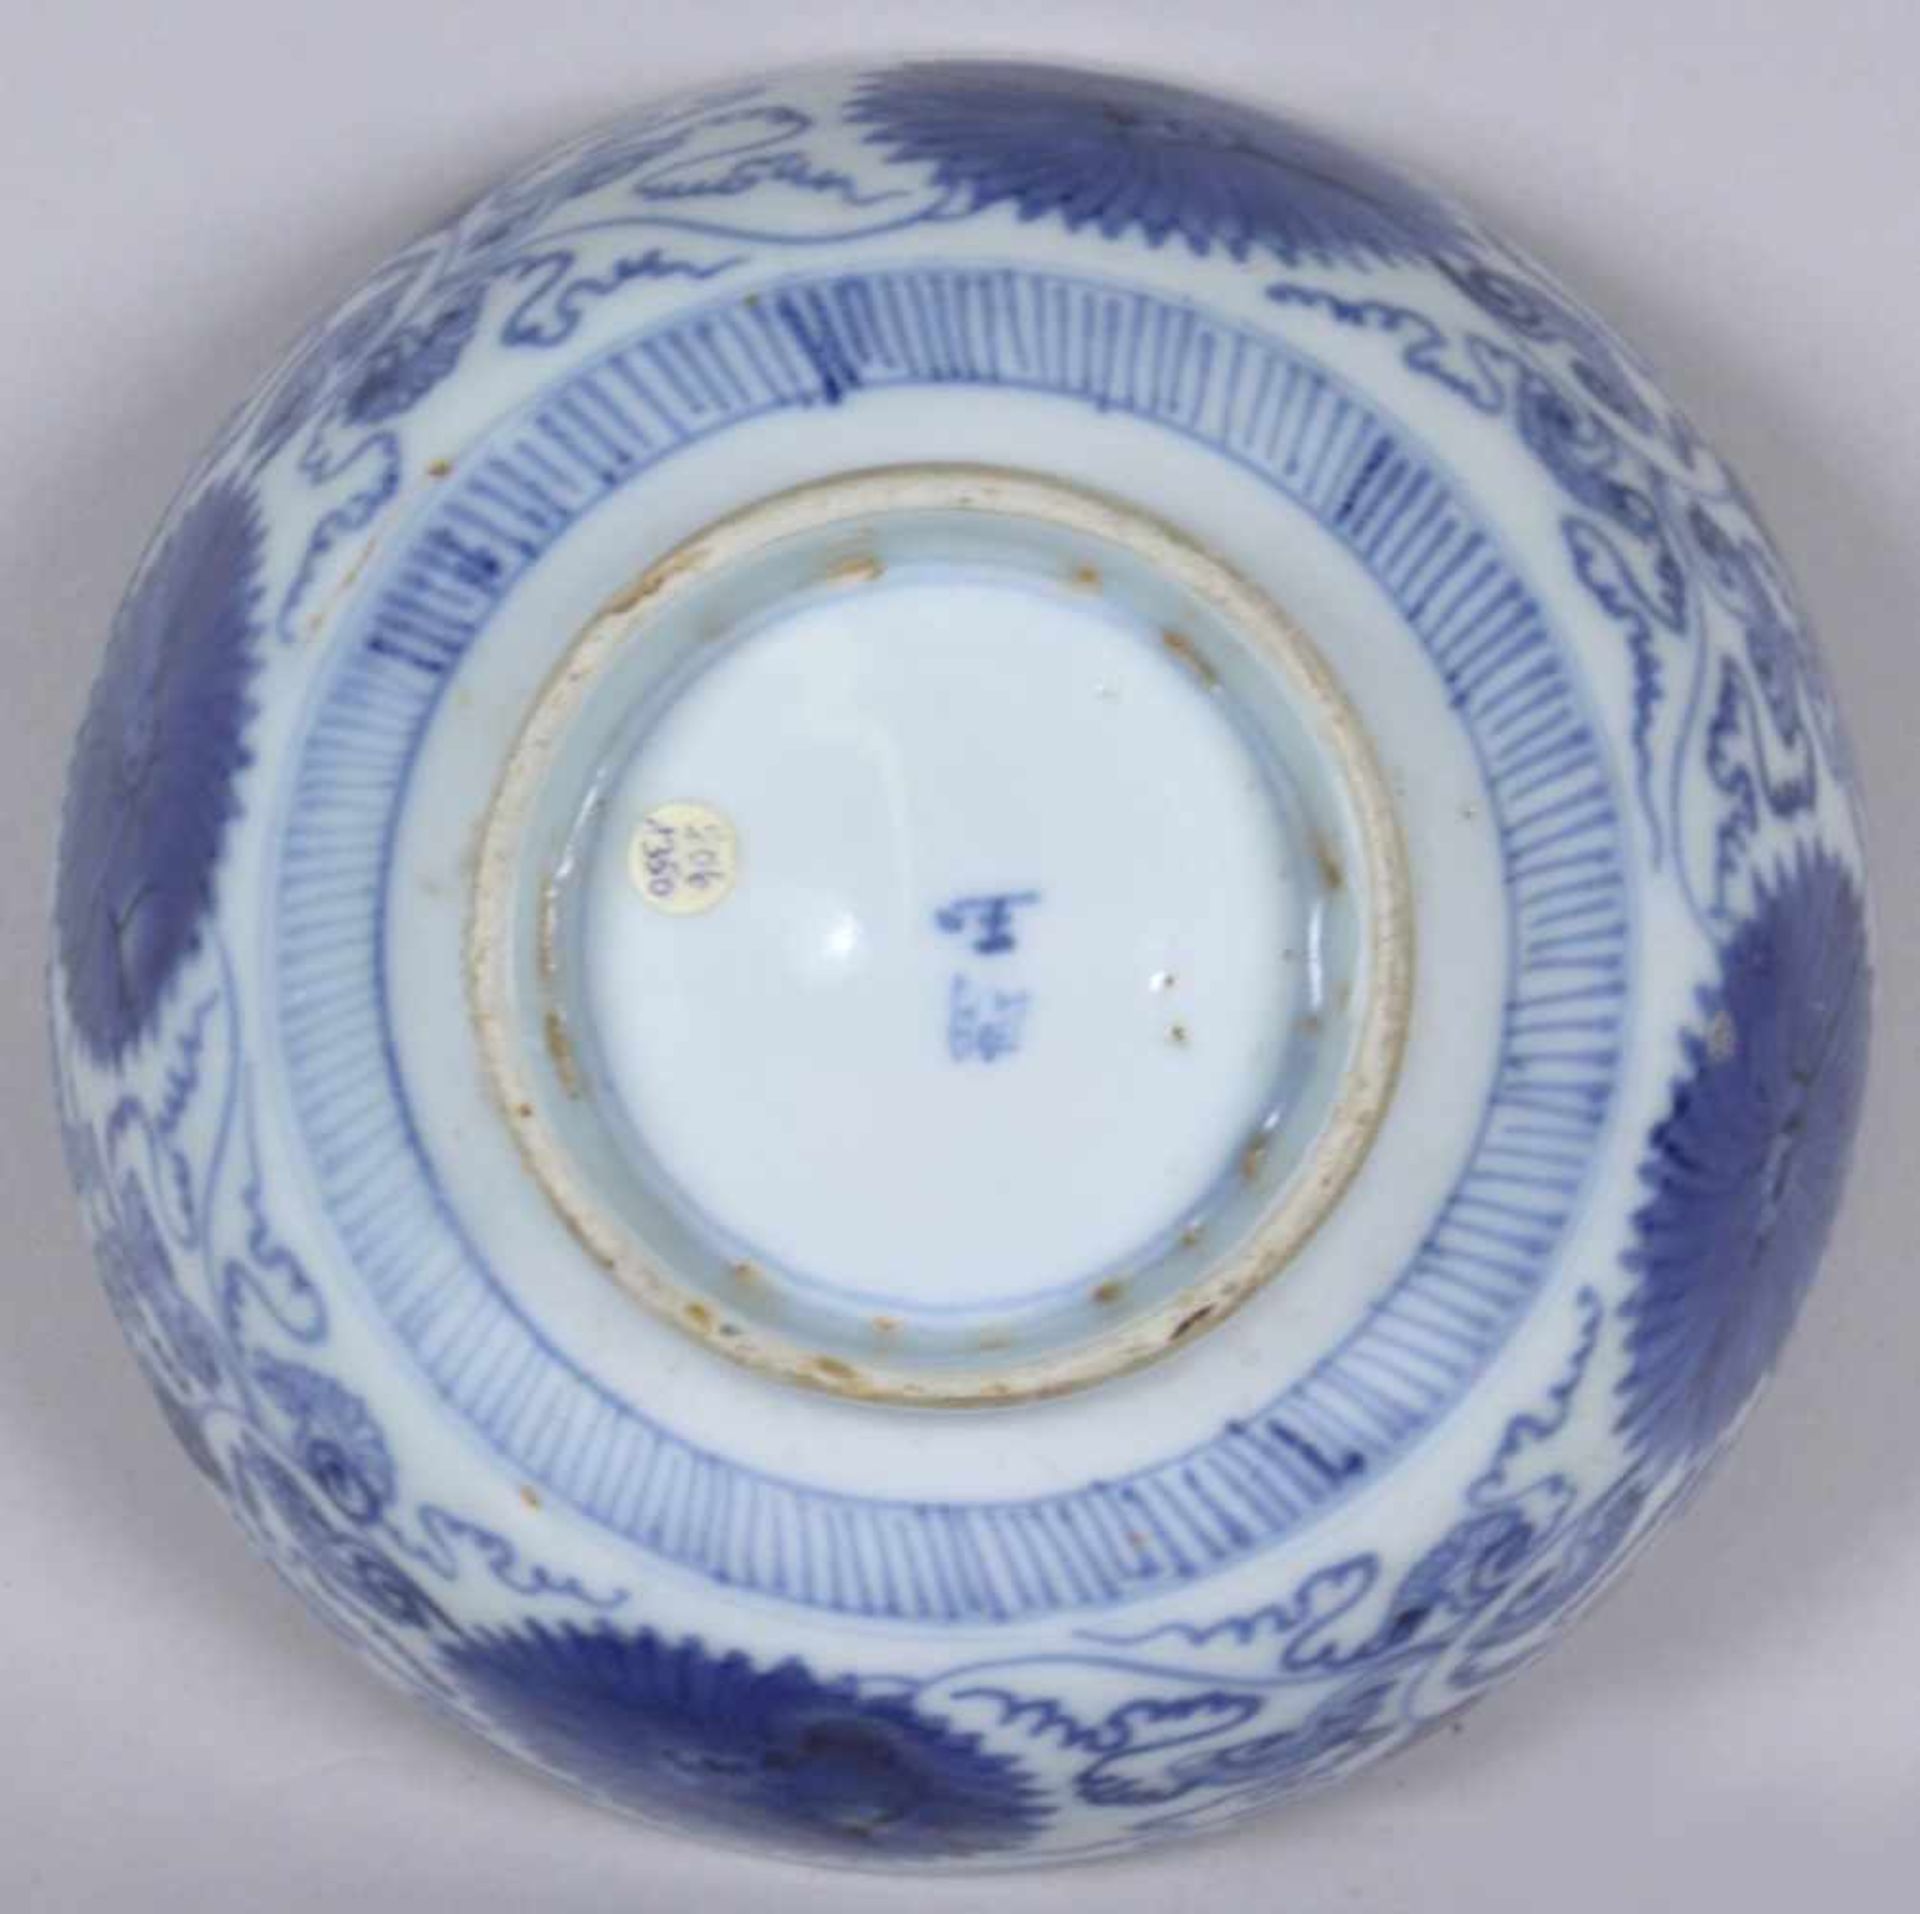 Porzellan-Kumme, China, 18. Jh. , über eingezogenem Rundstand halbkuglig gemuldete Form,umlaufendes, - Bild 4 aus 4